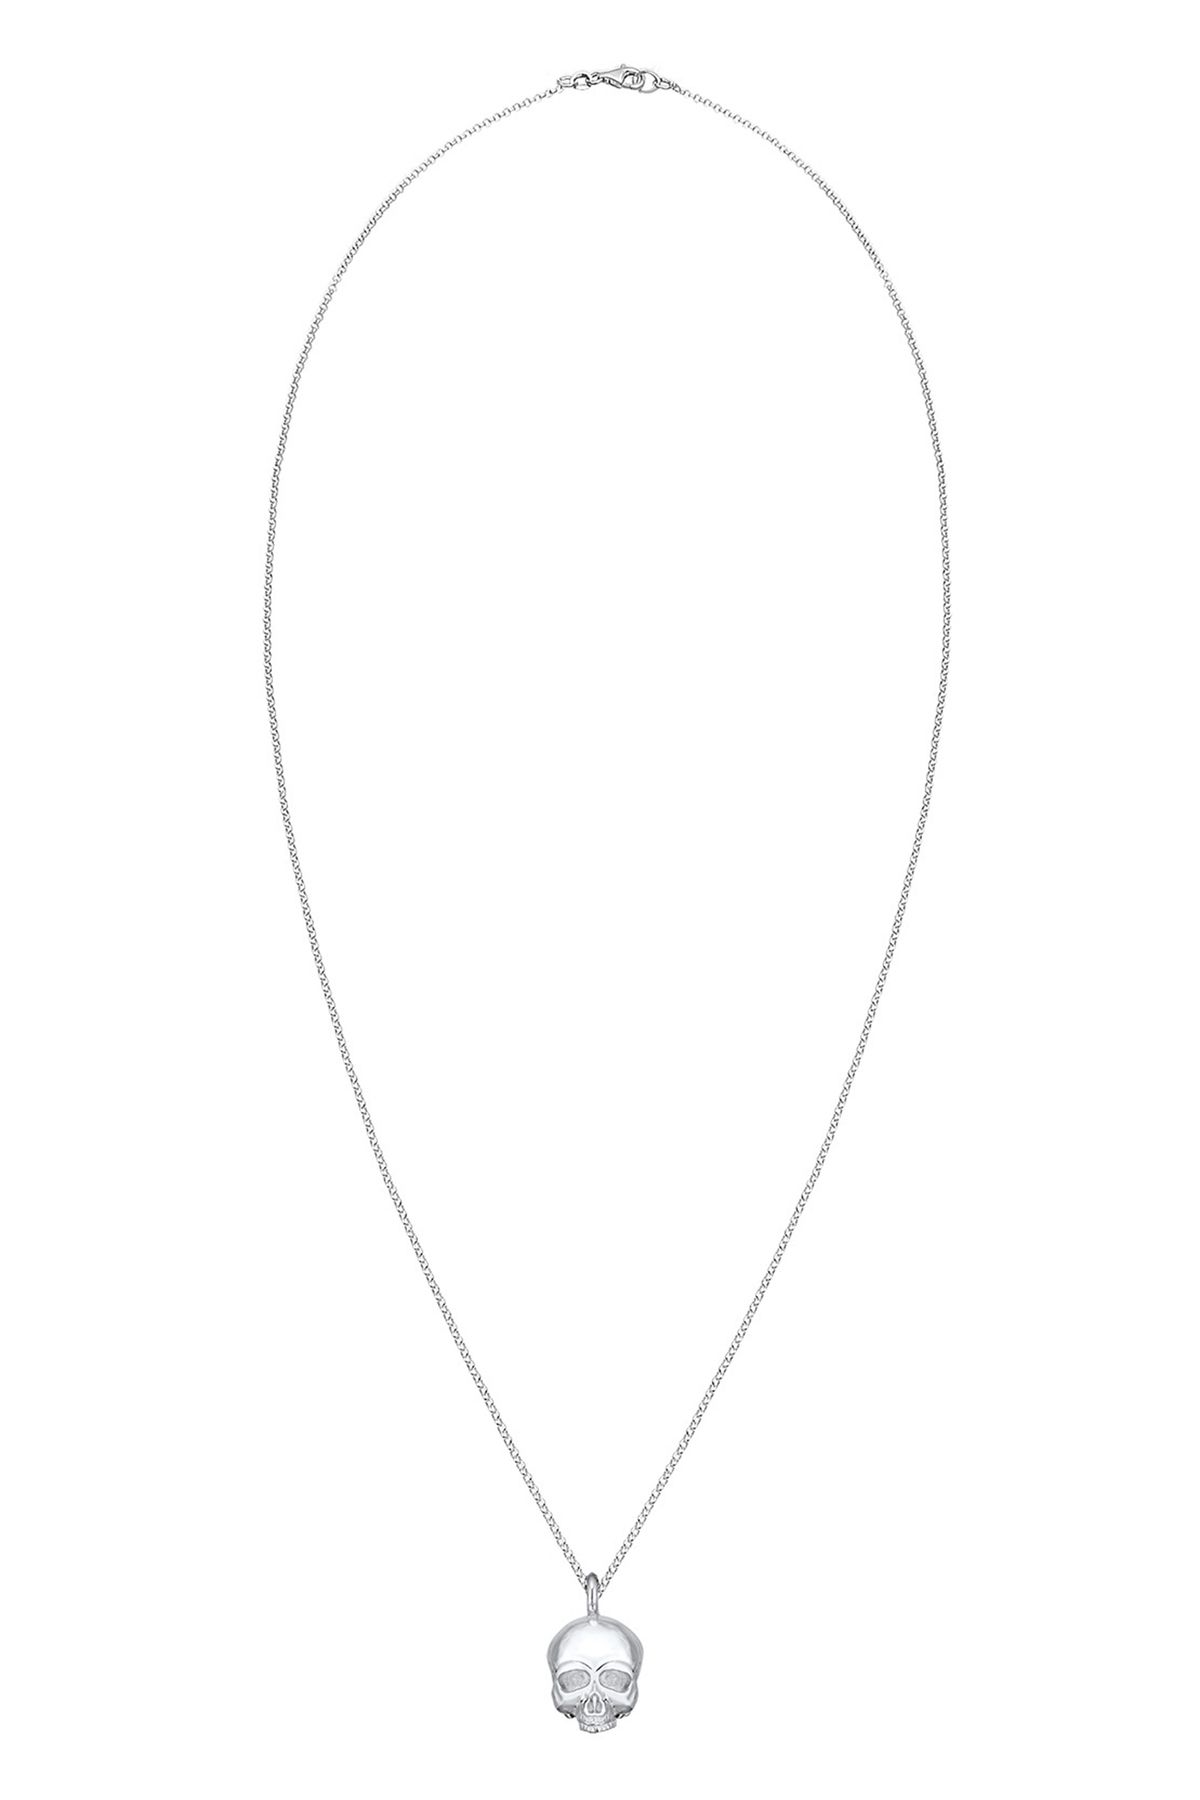 KUZZOI Halskette Totenkopf Schädel Gothic 925 Sterling Silber in silber  bestellen - 99537901